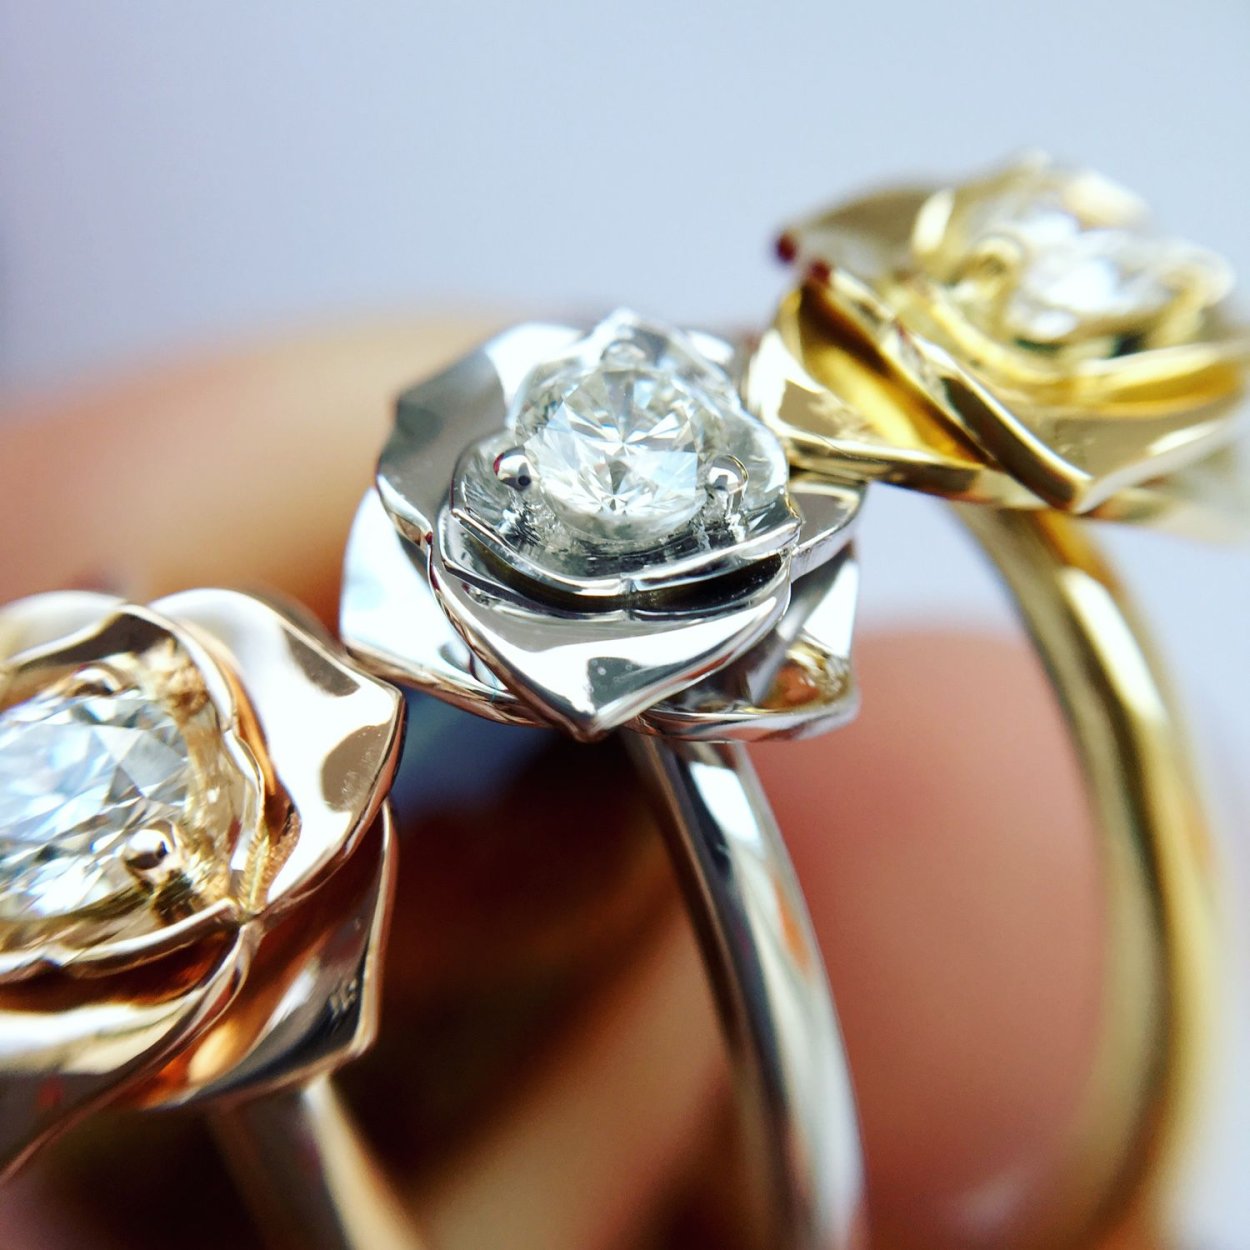 Кольцо роза с бриллиантами